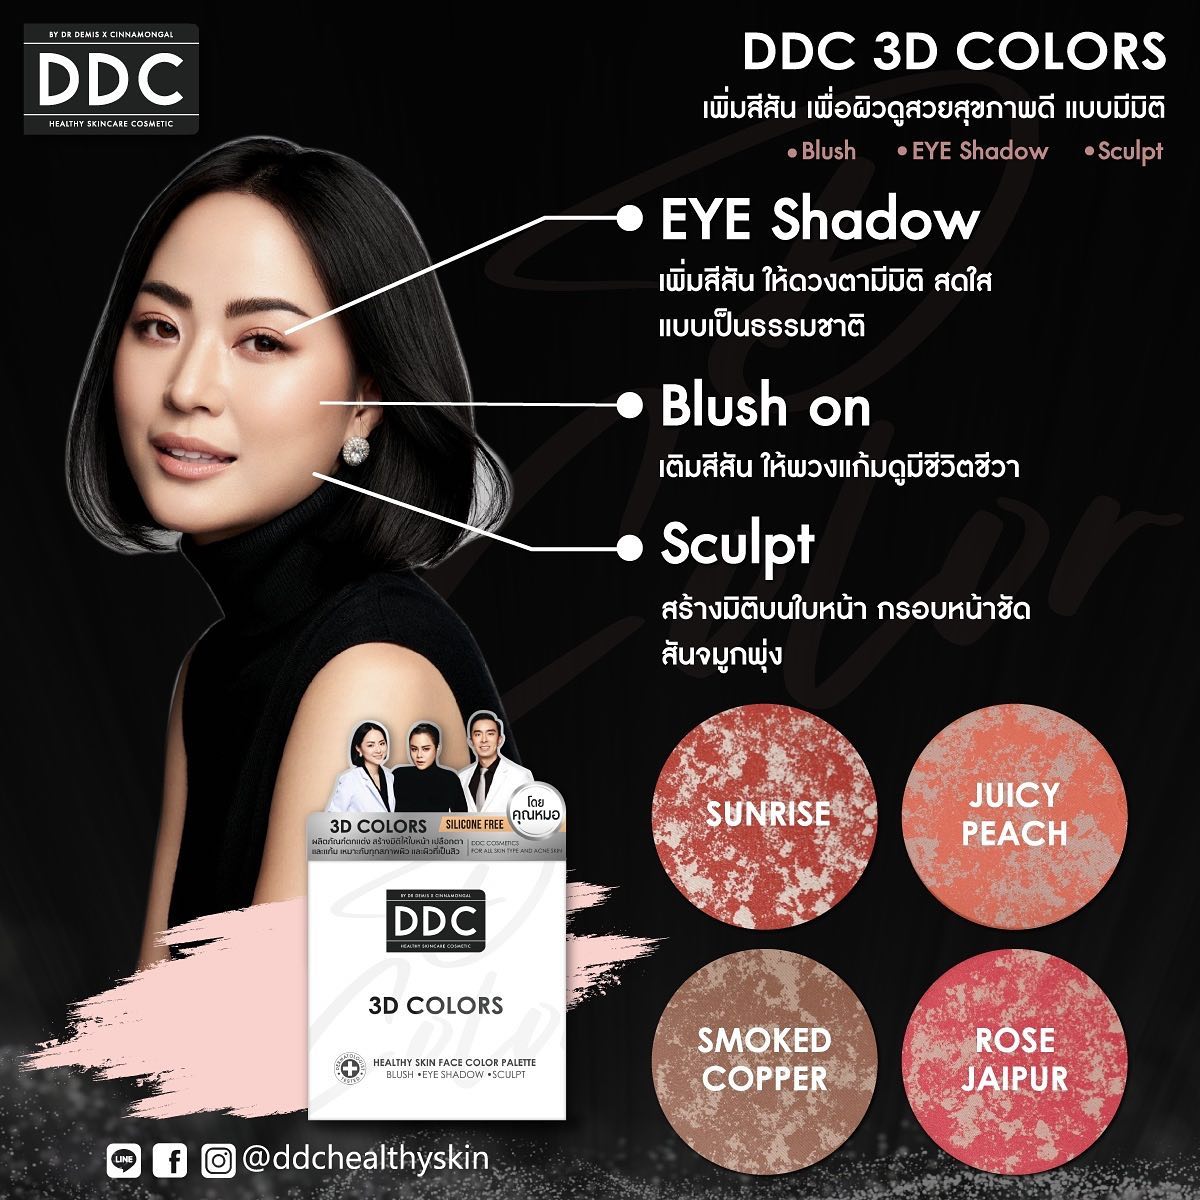 DrDemisX Cinnamongal,DDC 3D Colors 2.5*4g,DDC 3D Colors 2.5*4g ราคา,DDC 3D Colors 2.5*4g รีวิว,